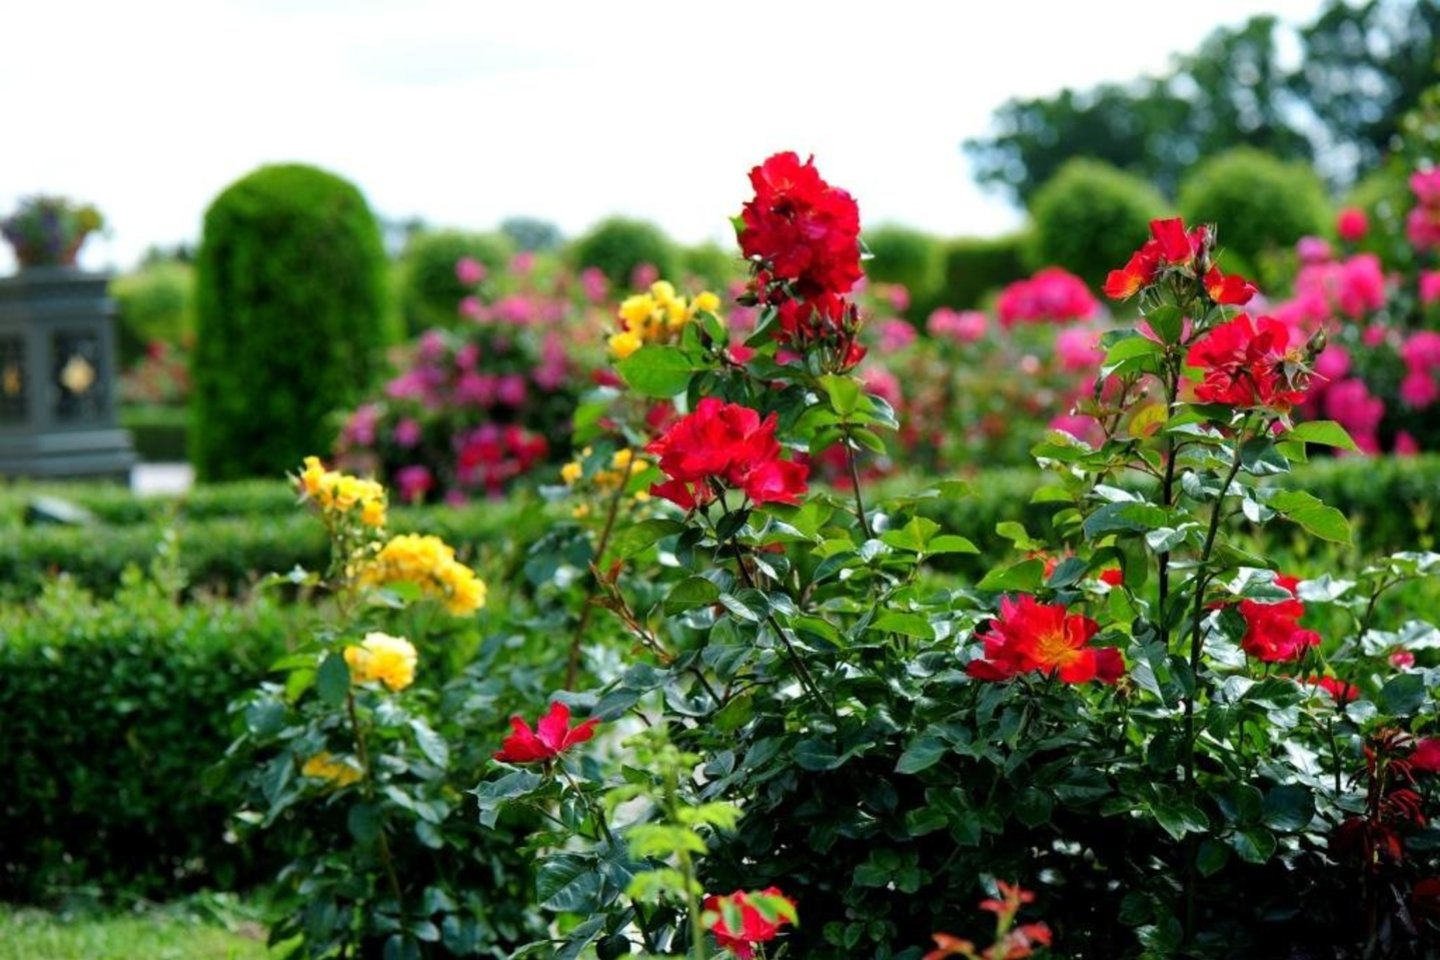 Rundalės pilies rožyne 2,3 ha plote auginamos 2230 skirtingų rožių veislių.<br> A.Tubaitės nuotr.